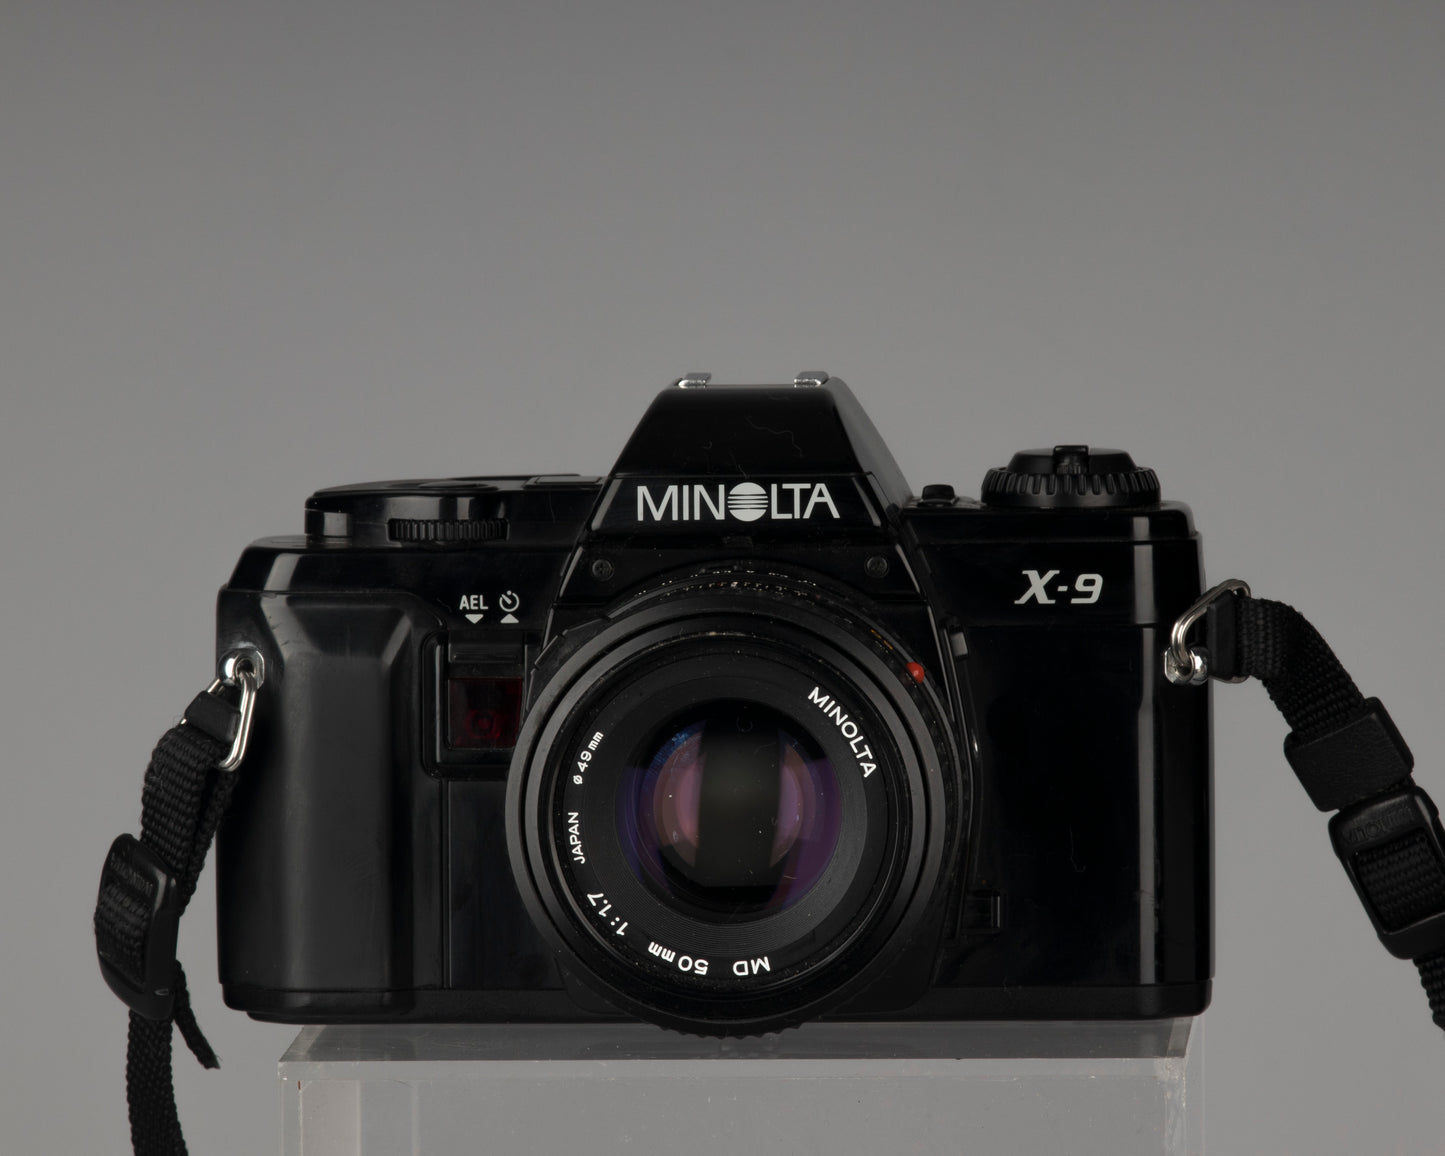 Minolta X-9 35 mm SLR avec objectif Minolta MD 50 mm f1.7 + étui toujours prêt